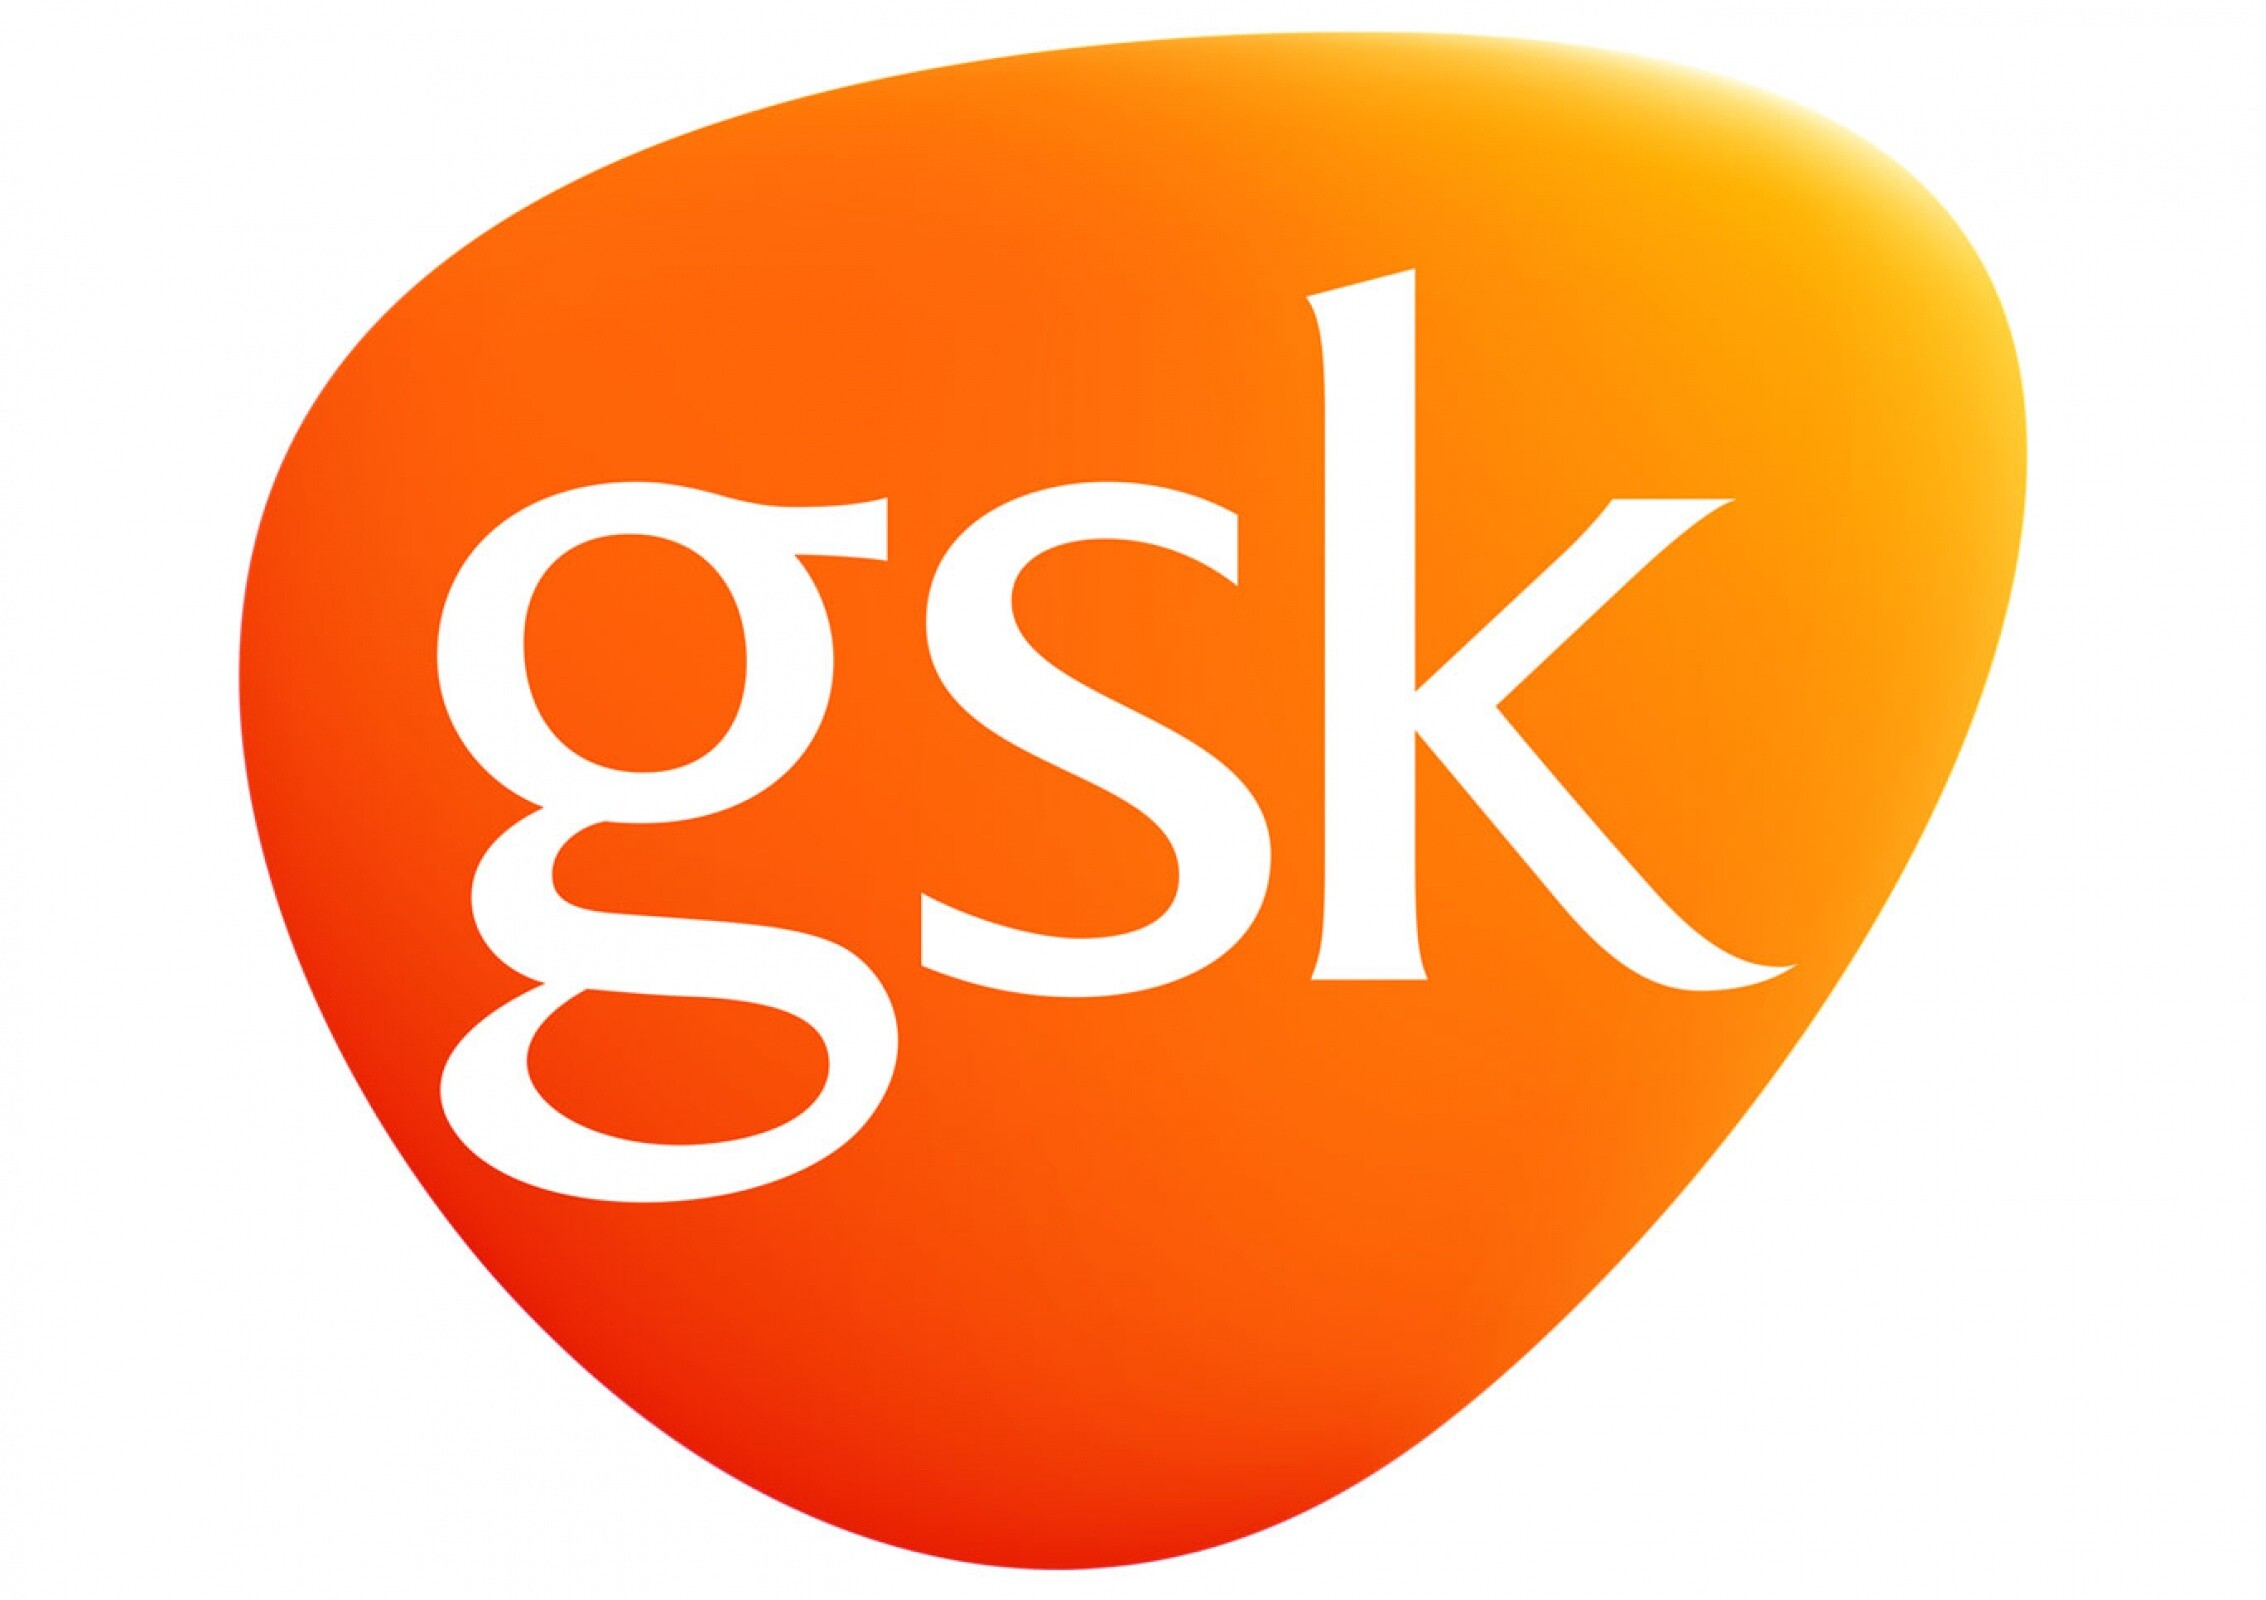 gsk logo4